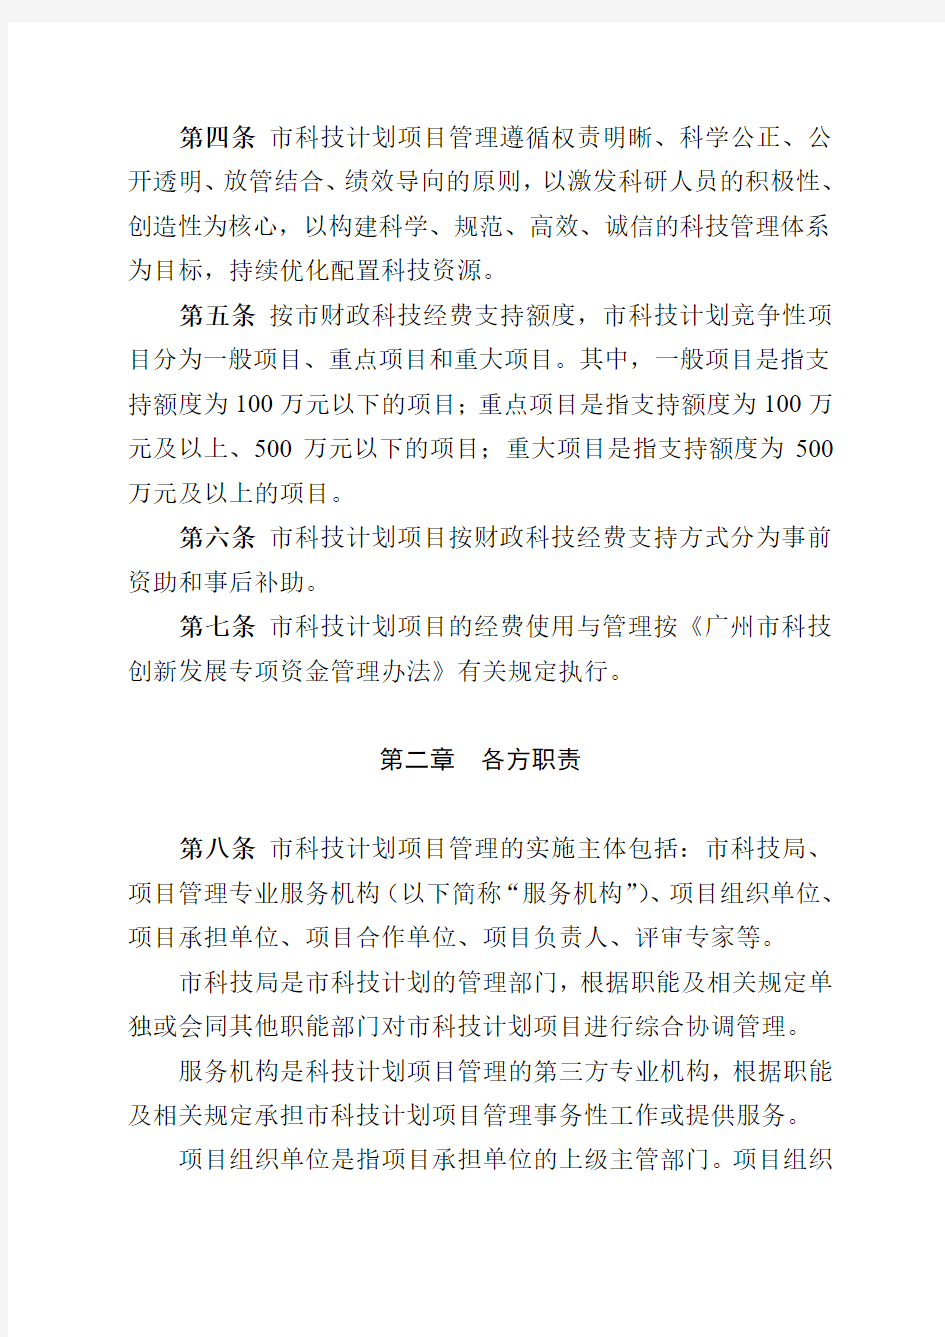 广州市科技计划项目管理办法(修订稿)